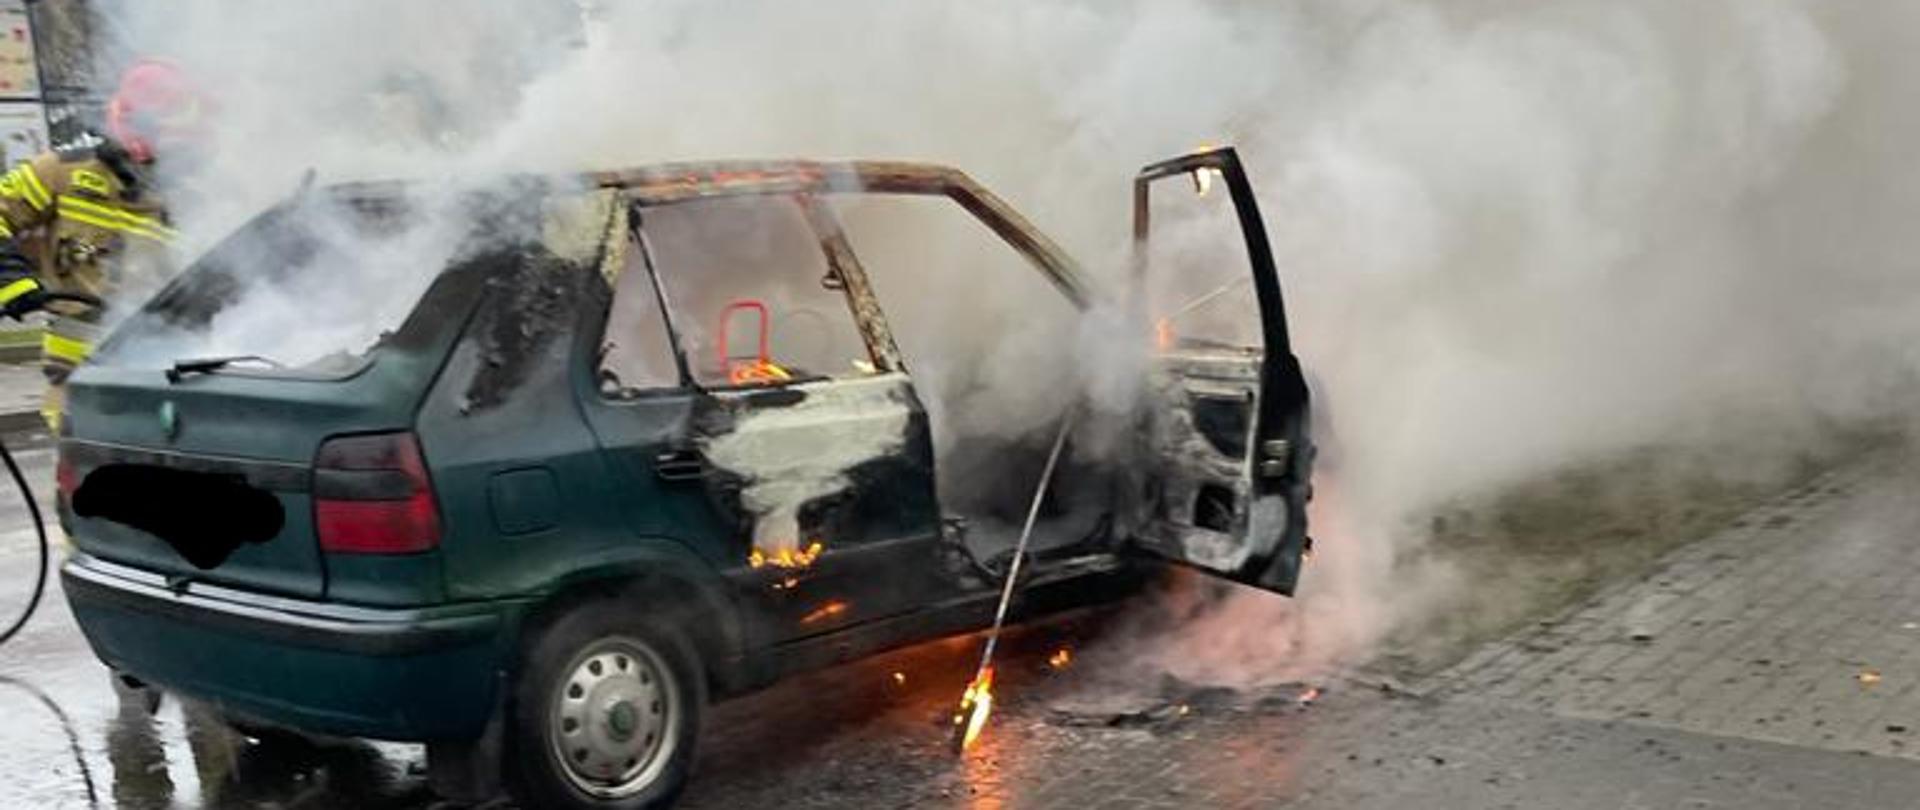 Na ulicy Moniuszki w Żarach podczas jazdy zapalił się samochód osobowy marki Skoda Felicja. Aktualnie trwa akcja gaśnicza samochodu.